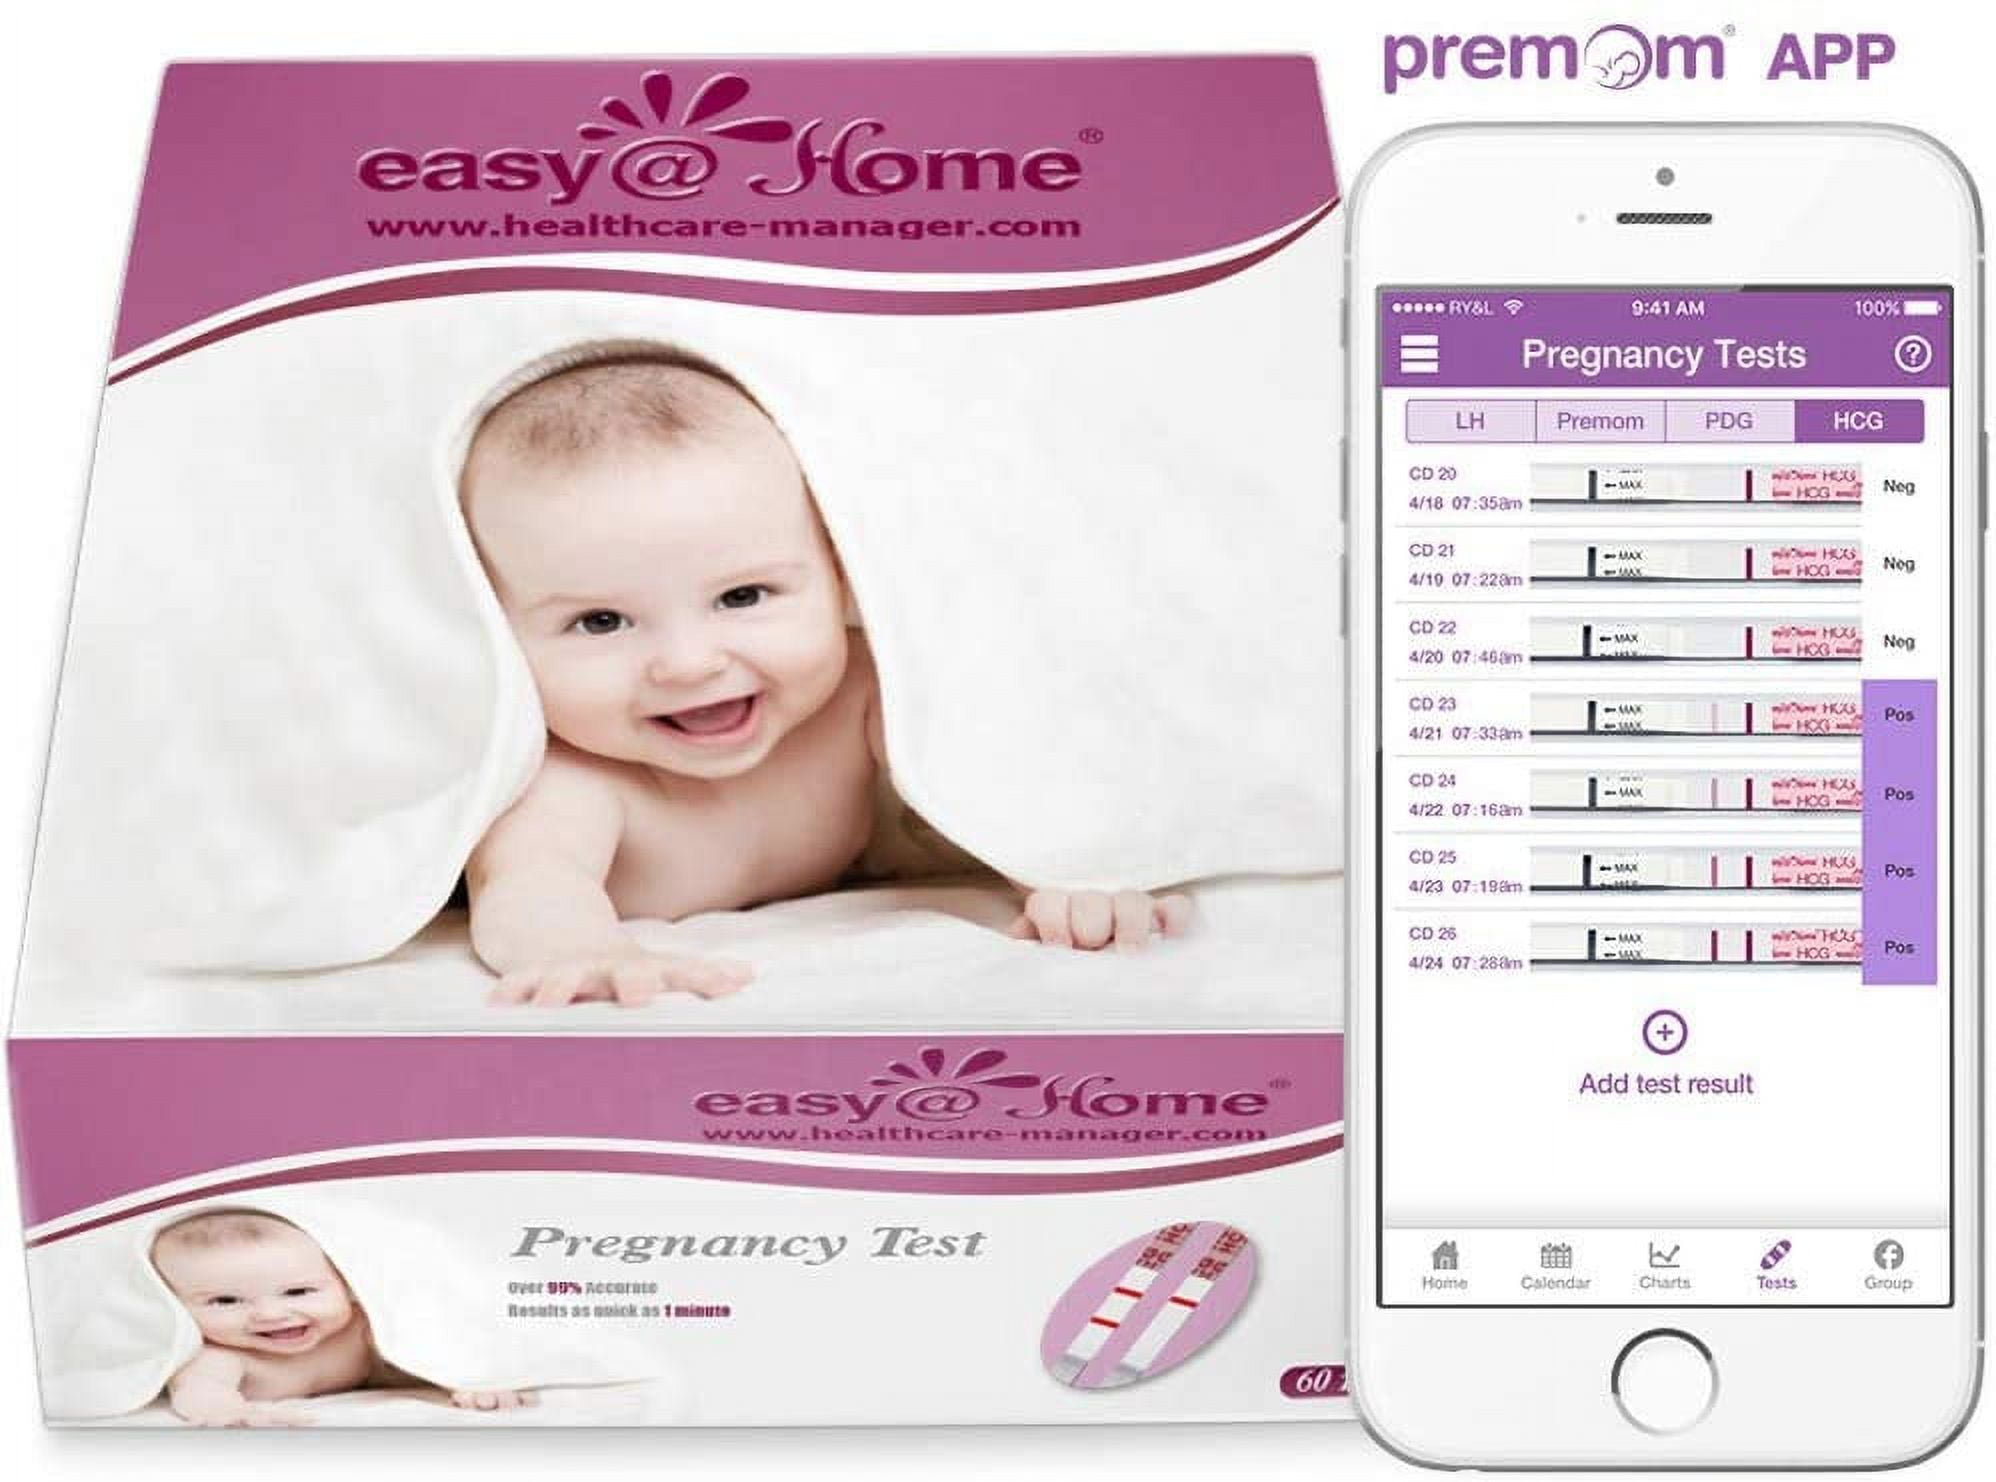 Easy@Home Pregnancy Test Strips Kit: 10-Pack HCG Test Strips